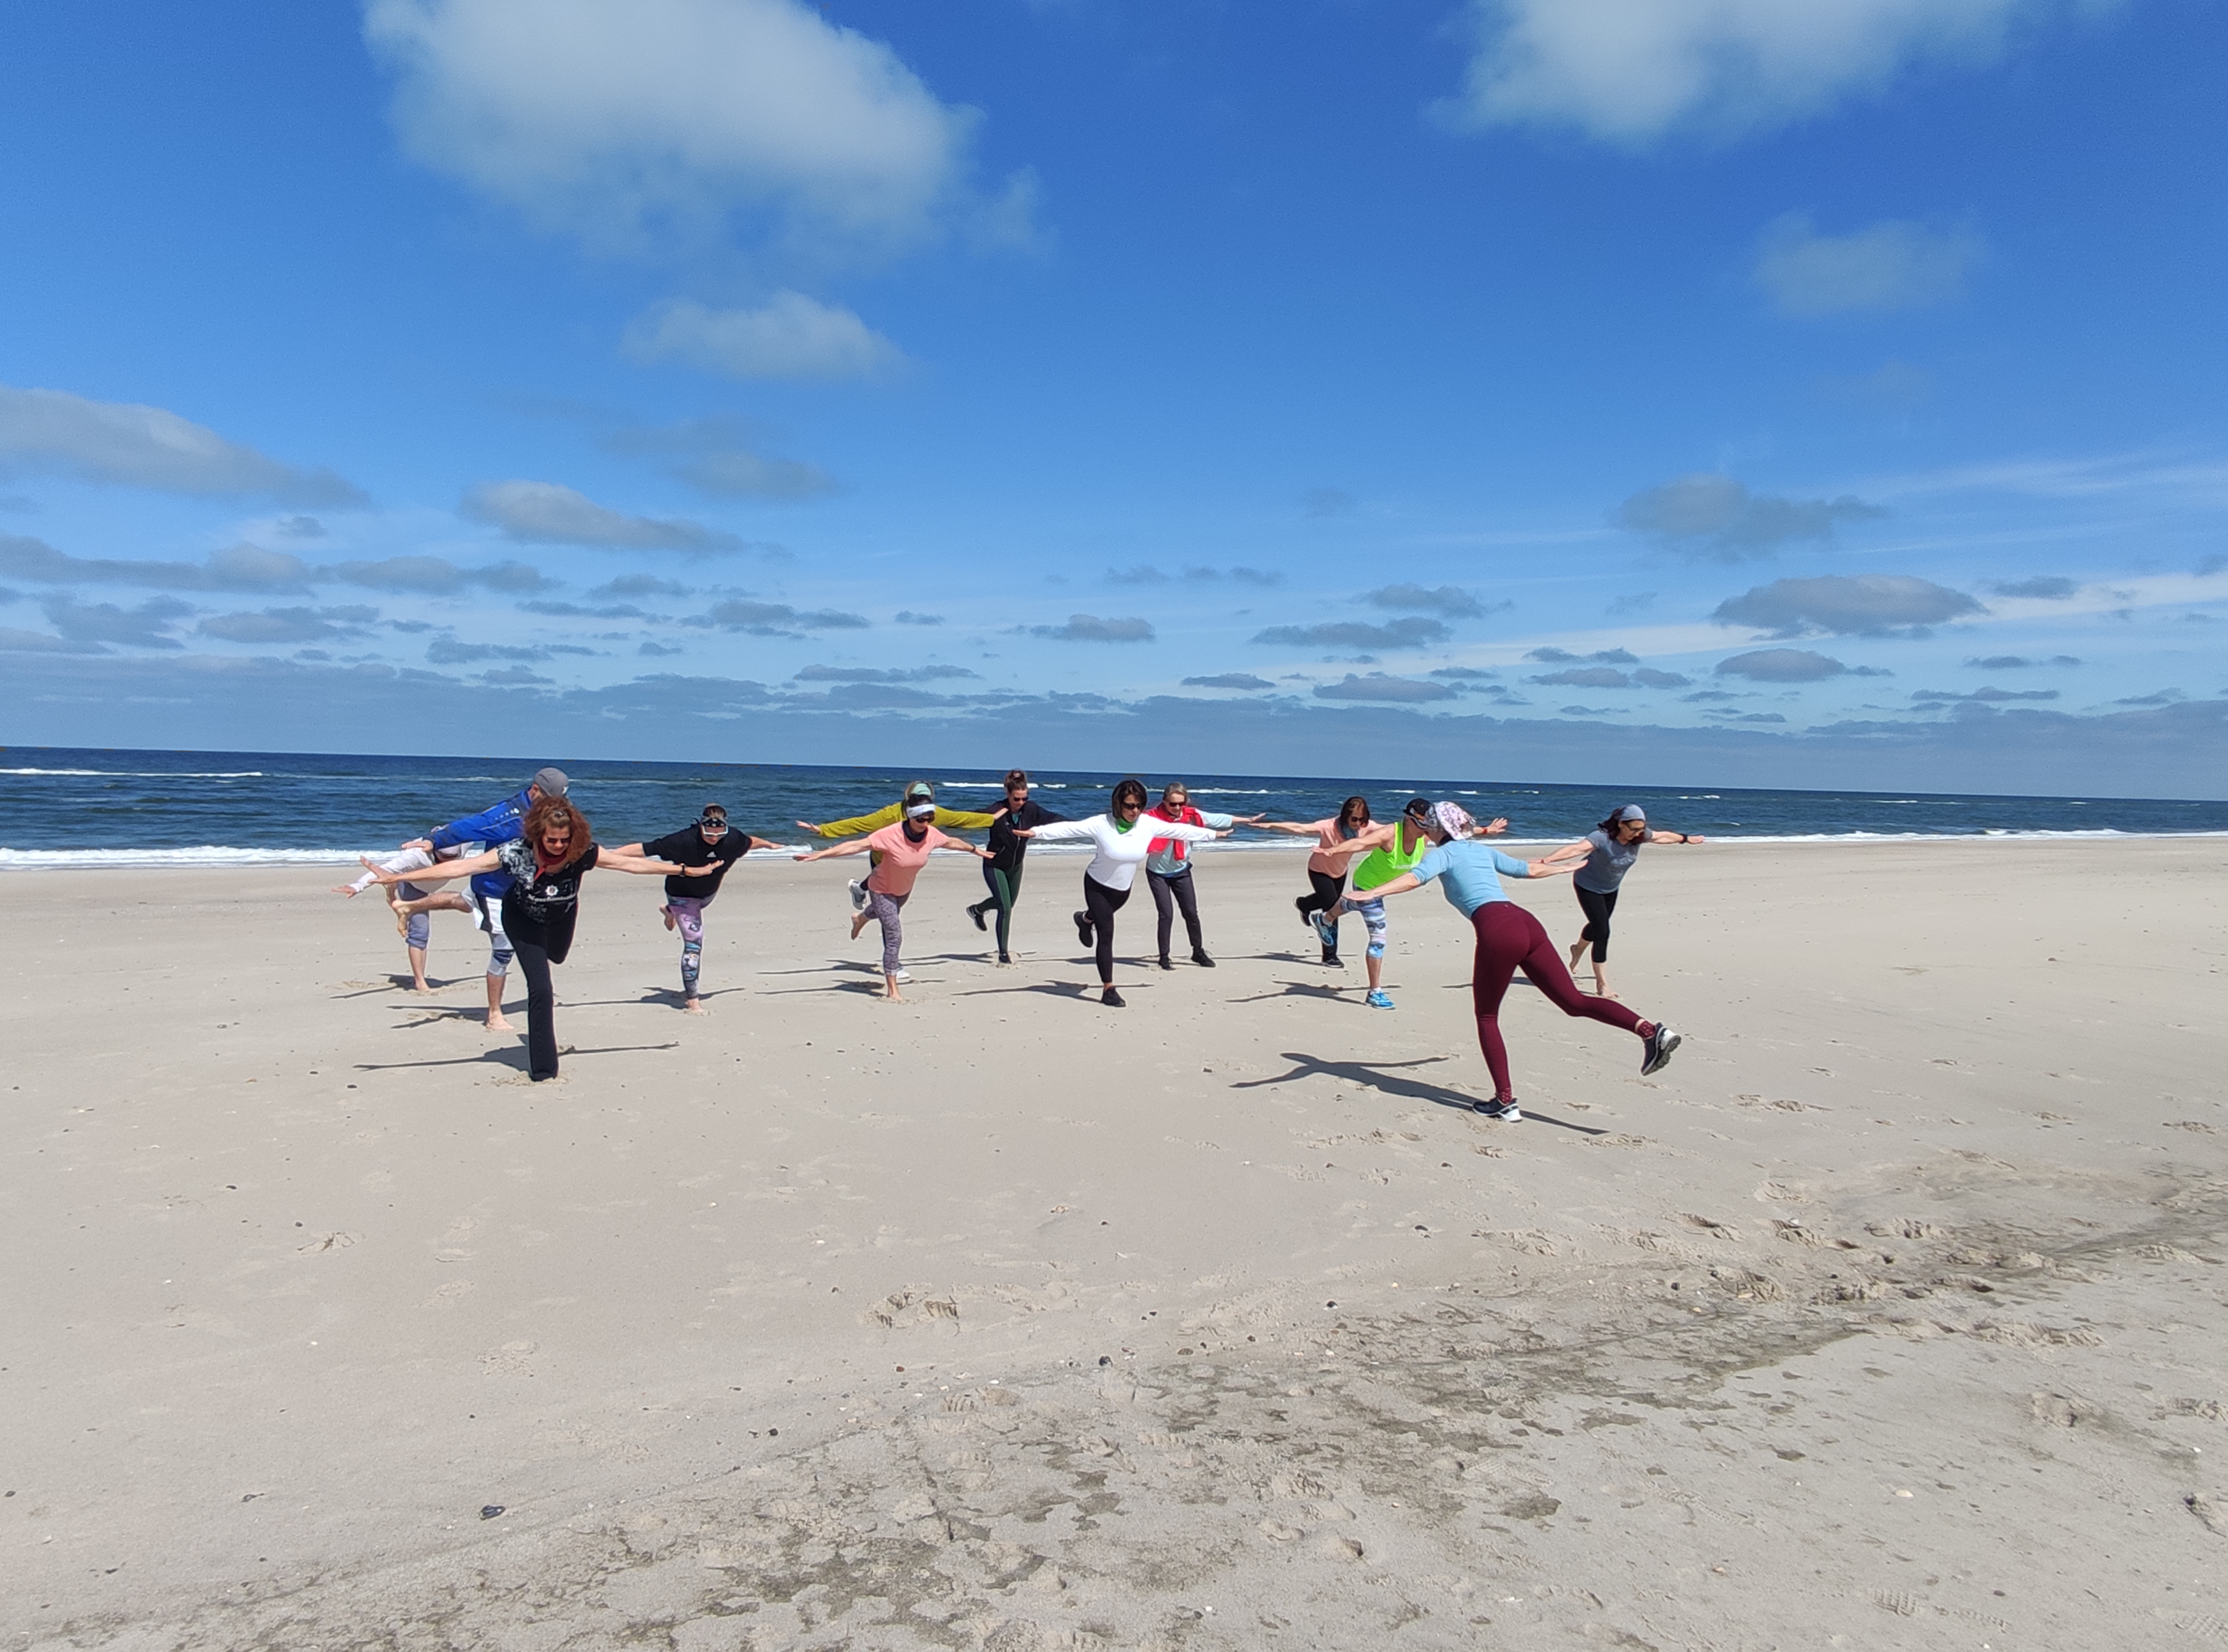 Gruppe trainiert am Strand Gleichgewichtsübungen.